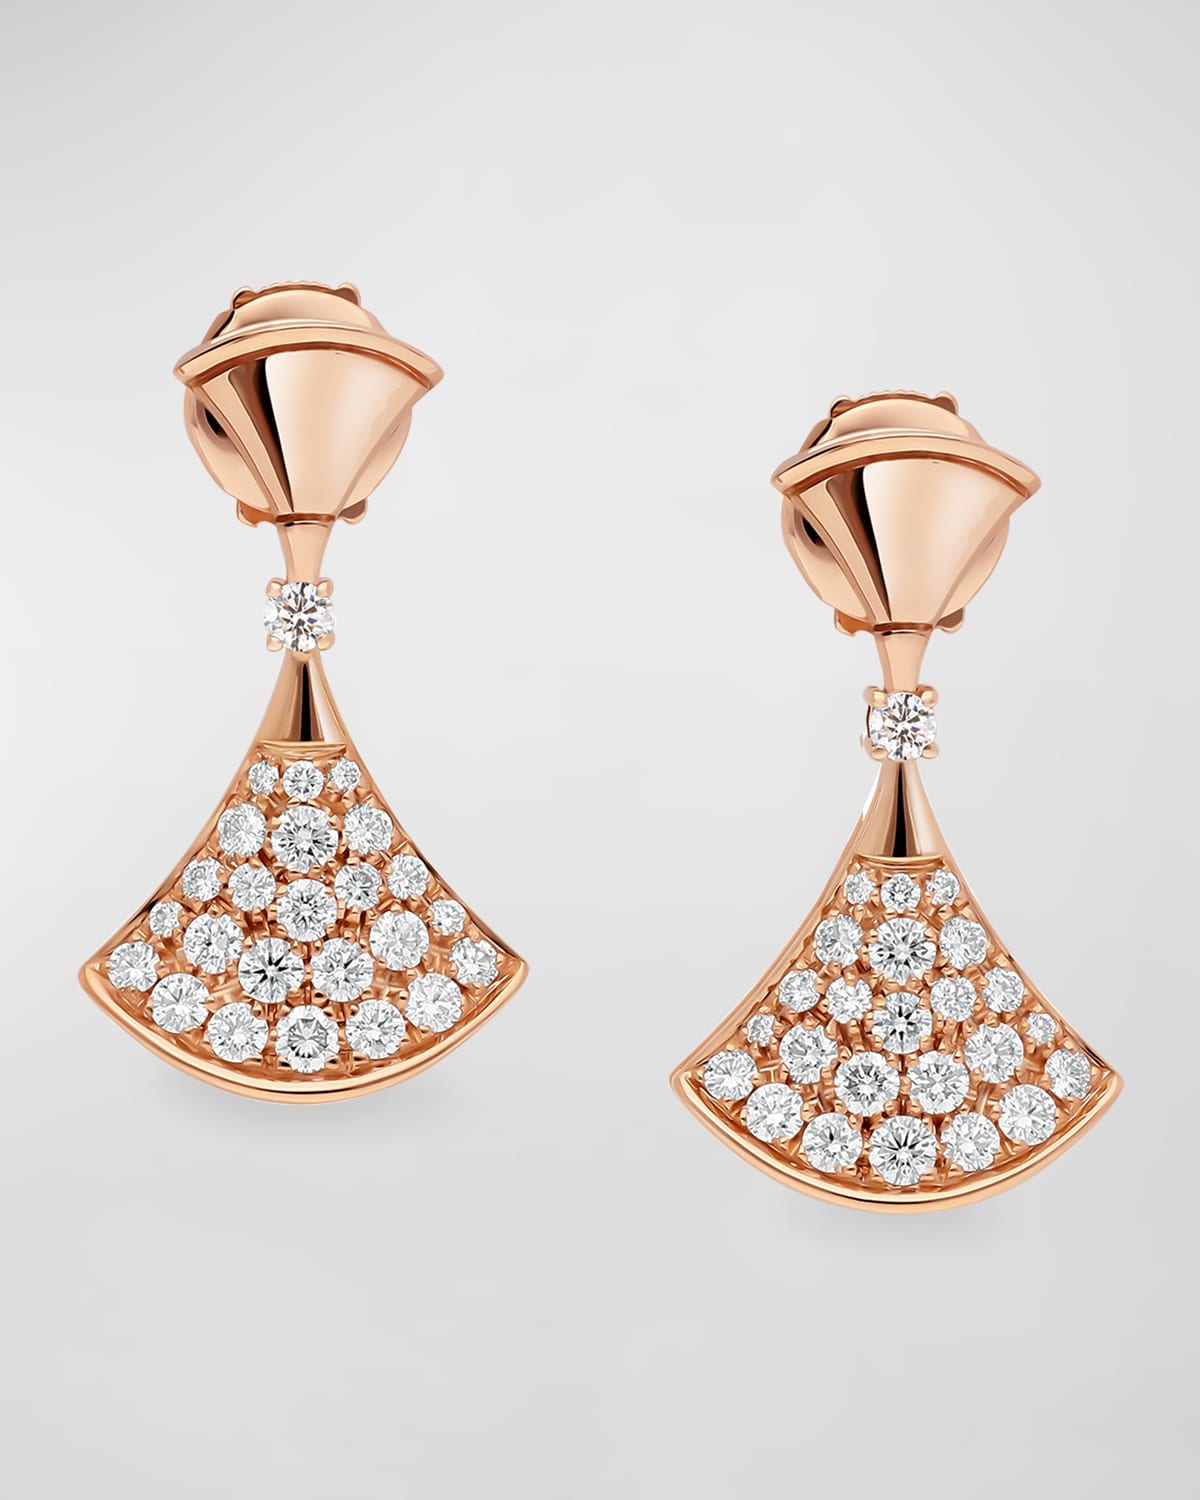 BVLGARI Divas' Dream Diamond Drop Earrings in 18k Rose Gold